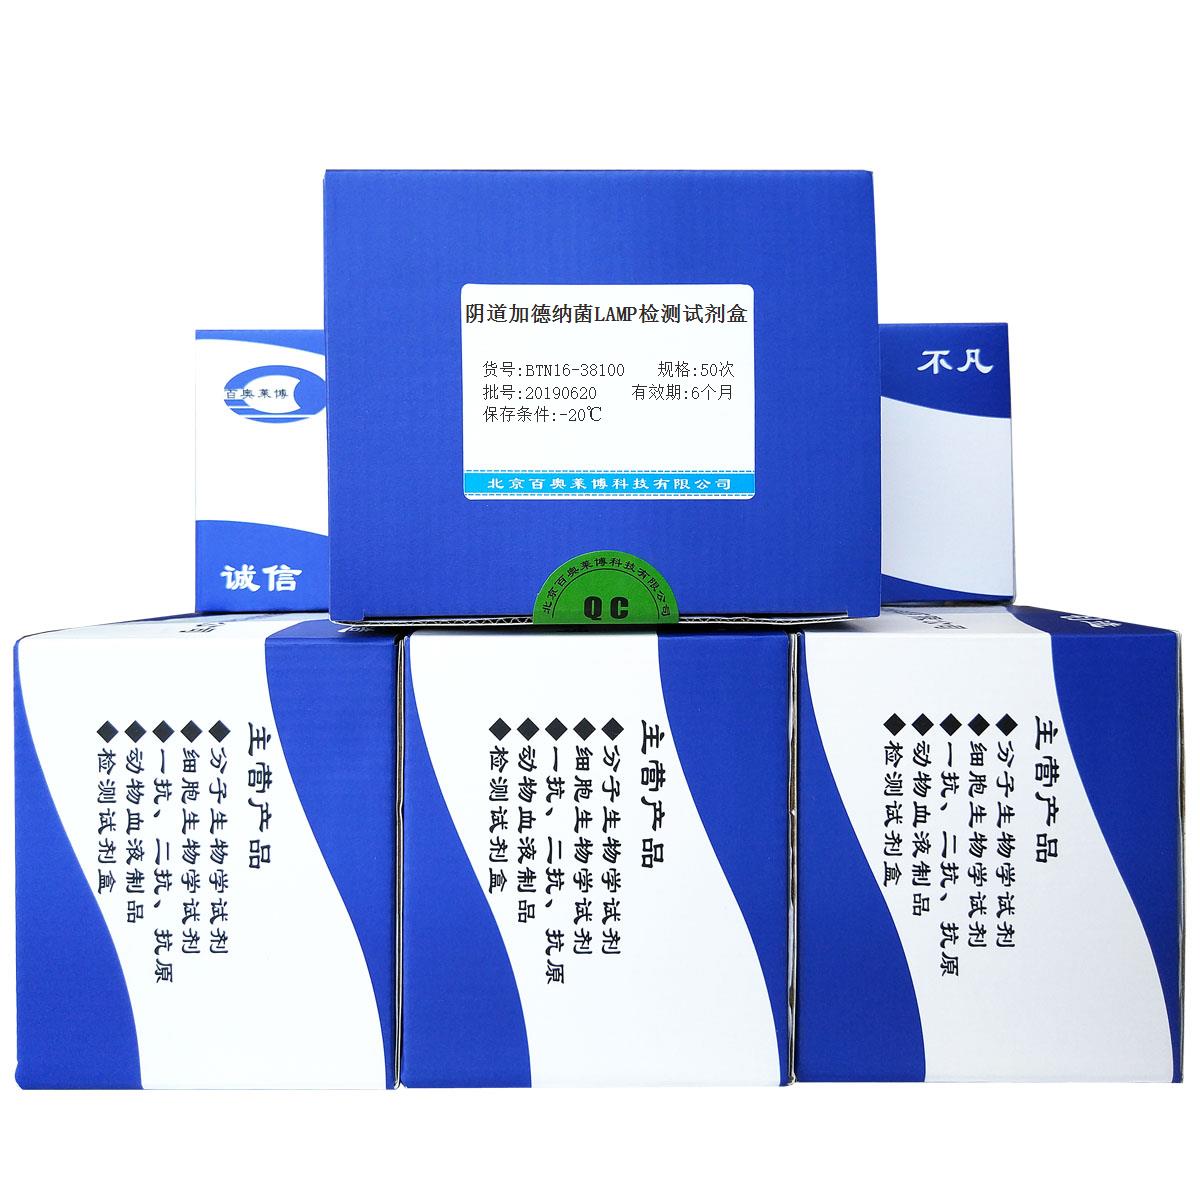 阴道加德纳菌LAMP检测试剂盒北京厂家